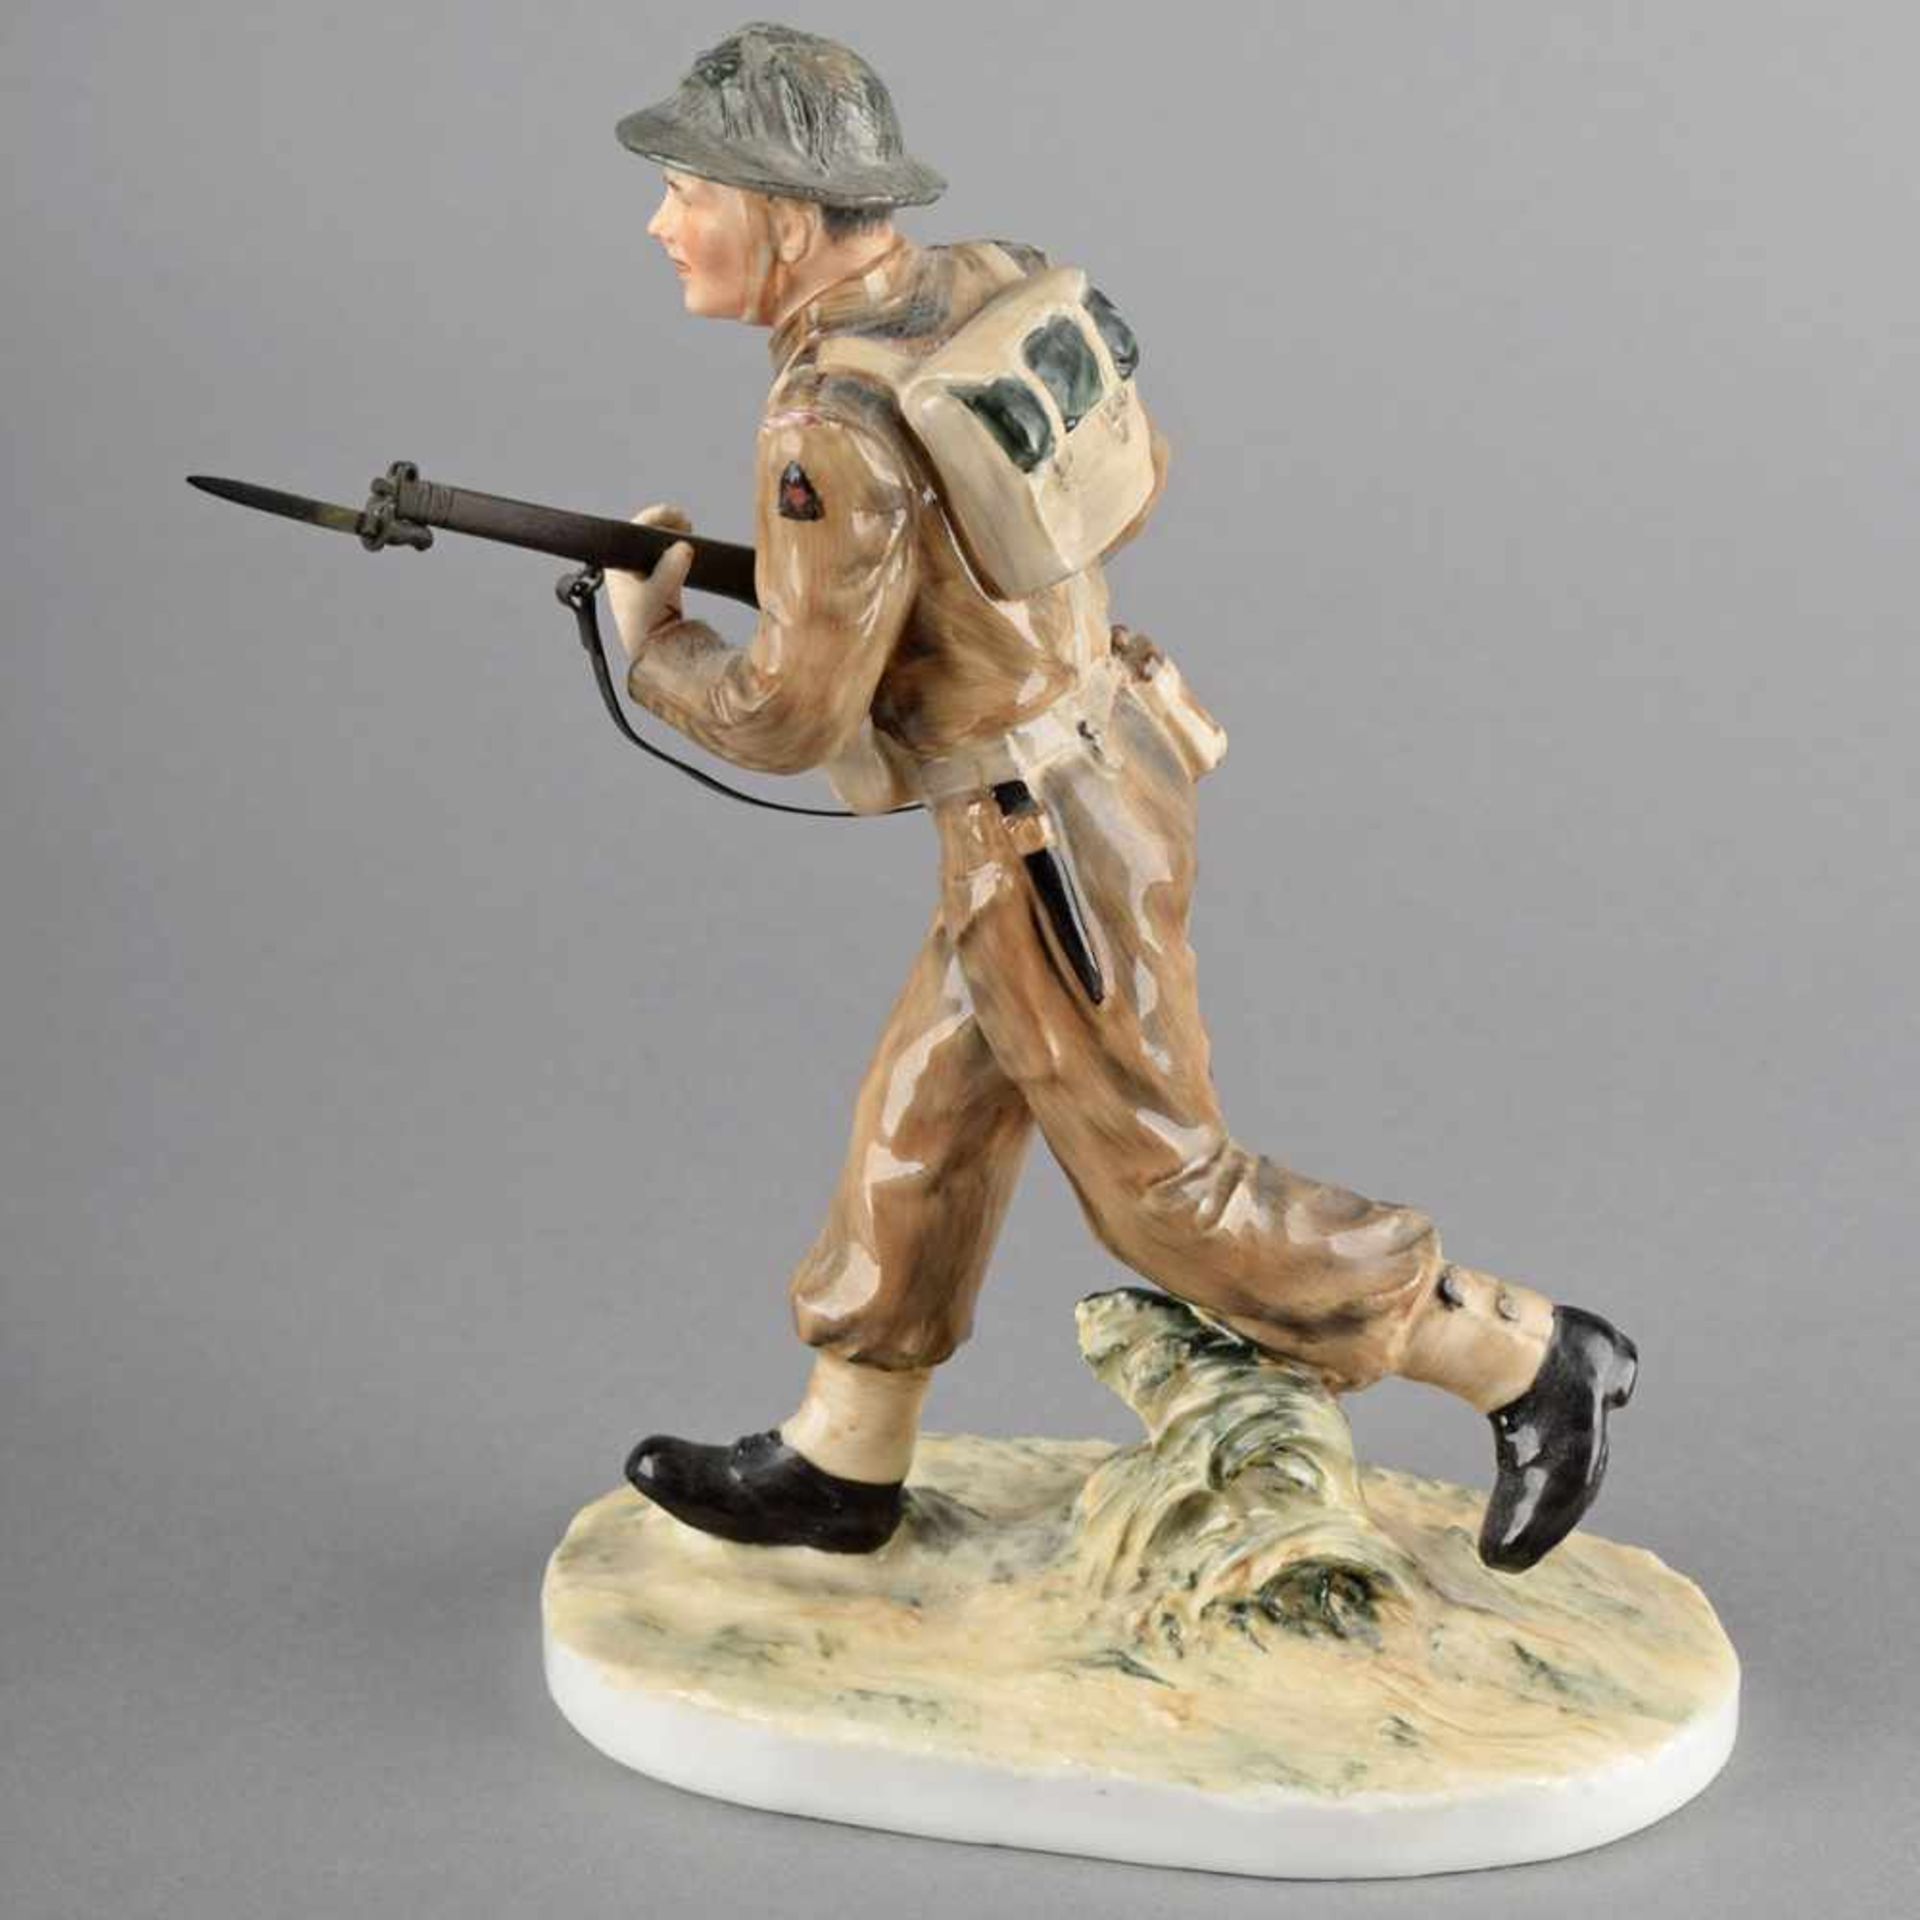 Zierfigur Soldat Hersteller: Coalport, England, Modell John Bromley, "Soldier" aus der Serie "For - Bild 3 aus 4